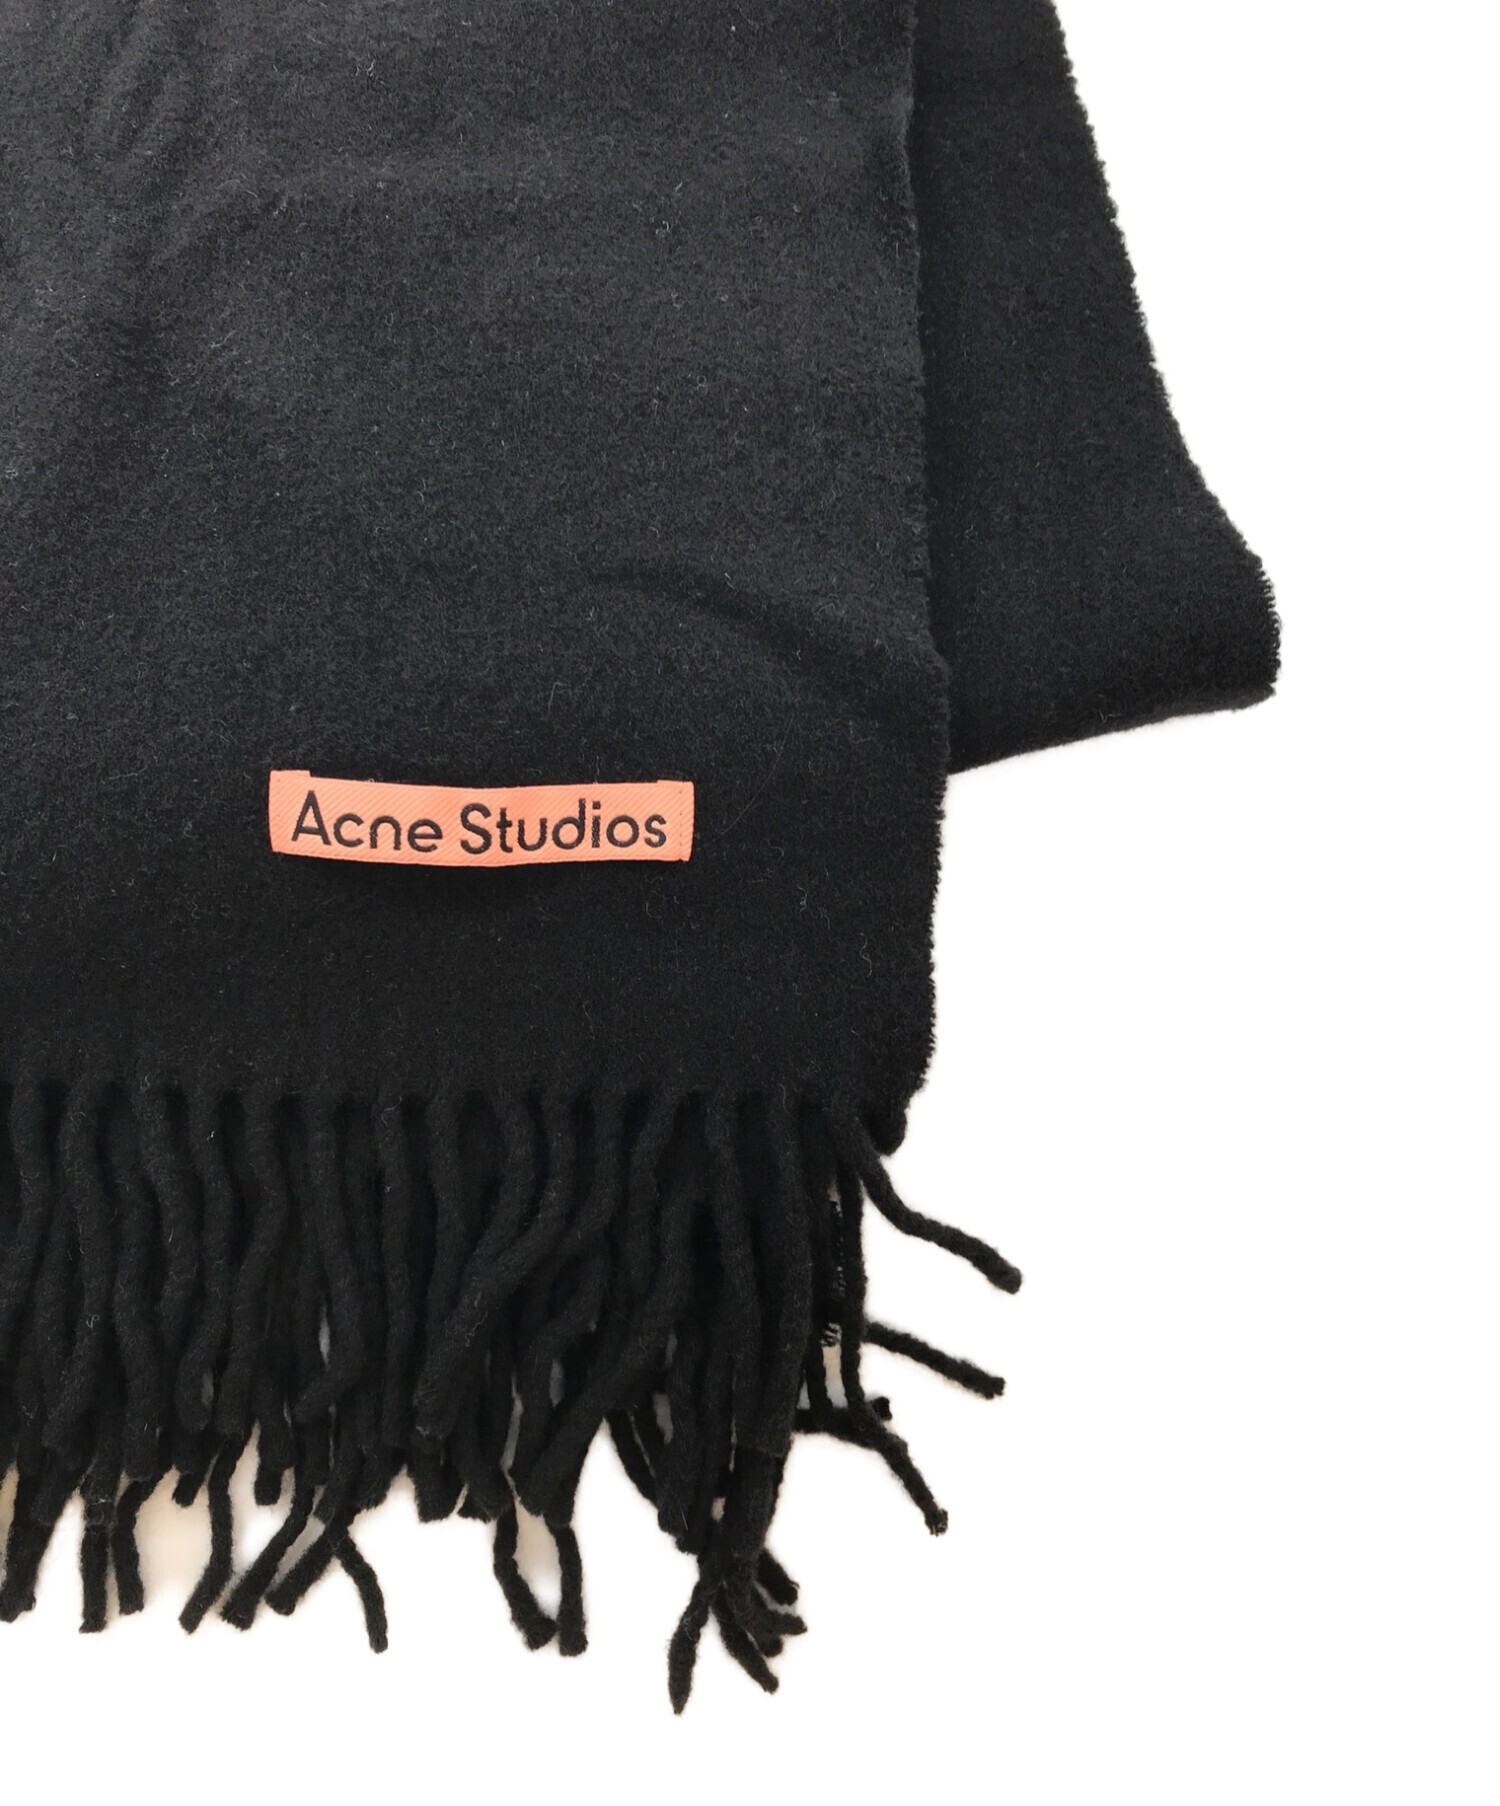 ACNE STUDIOS (アクネストゥディオス) ウールマフラー ブラック サイズ:200×70cm